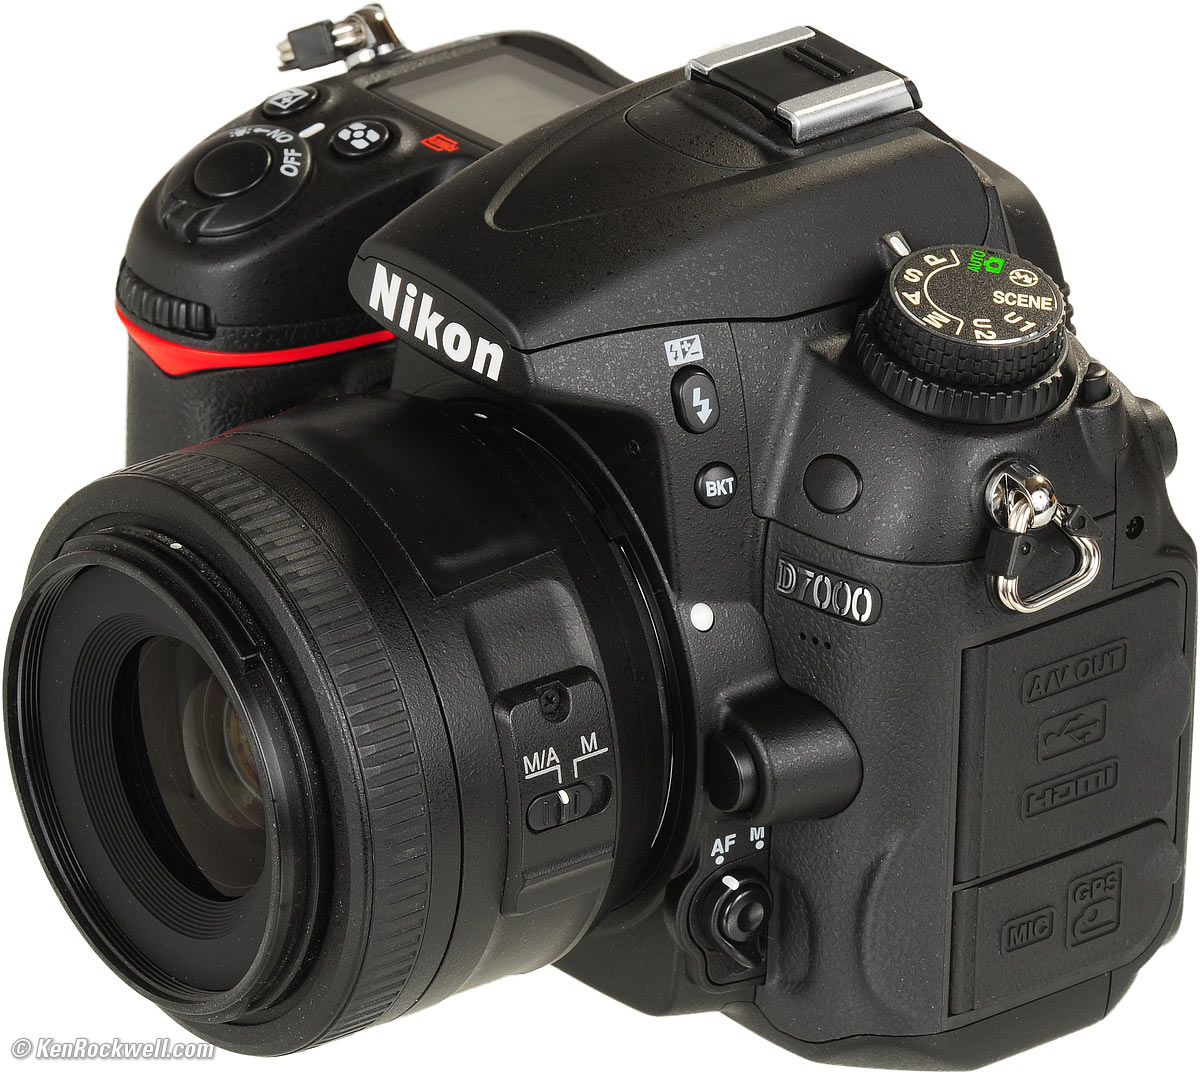 Nikon D7000 16.2MP DX-Format CMOS Digital SLR with 18-105mm f/3.5-5.6 AF-S DX VR ED Nikkor Lens